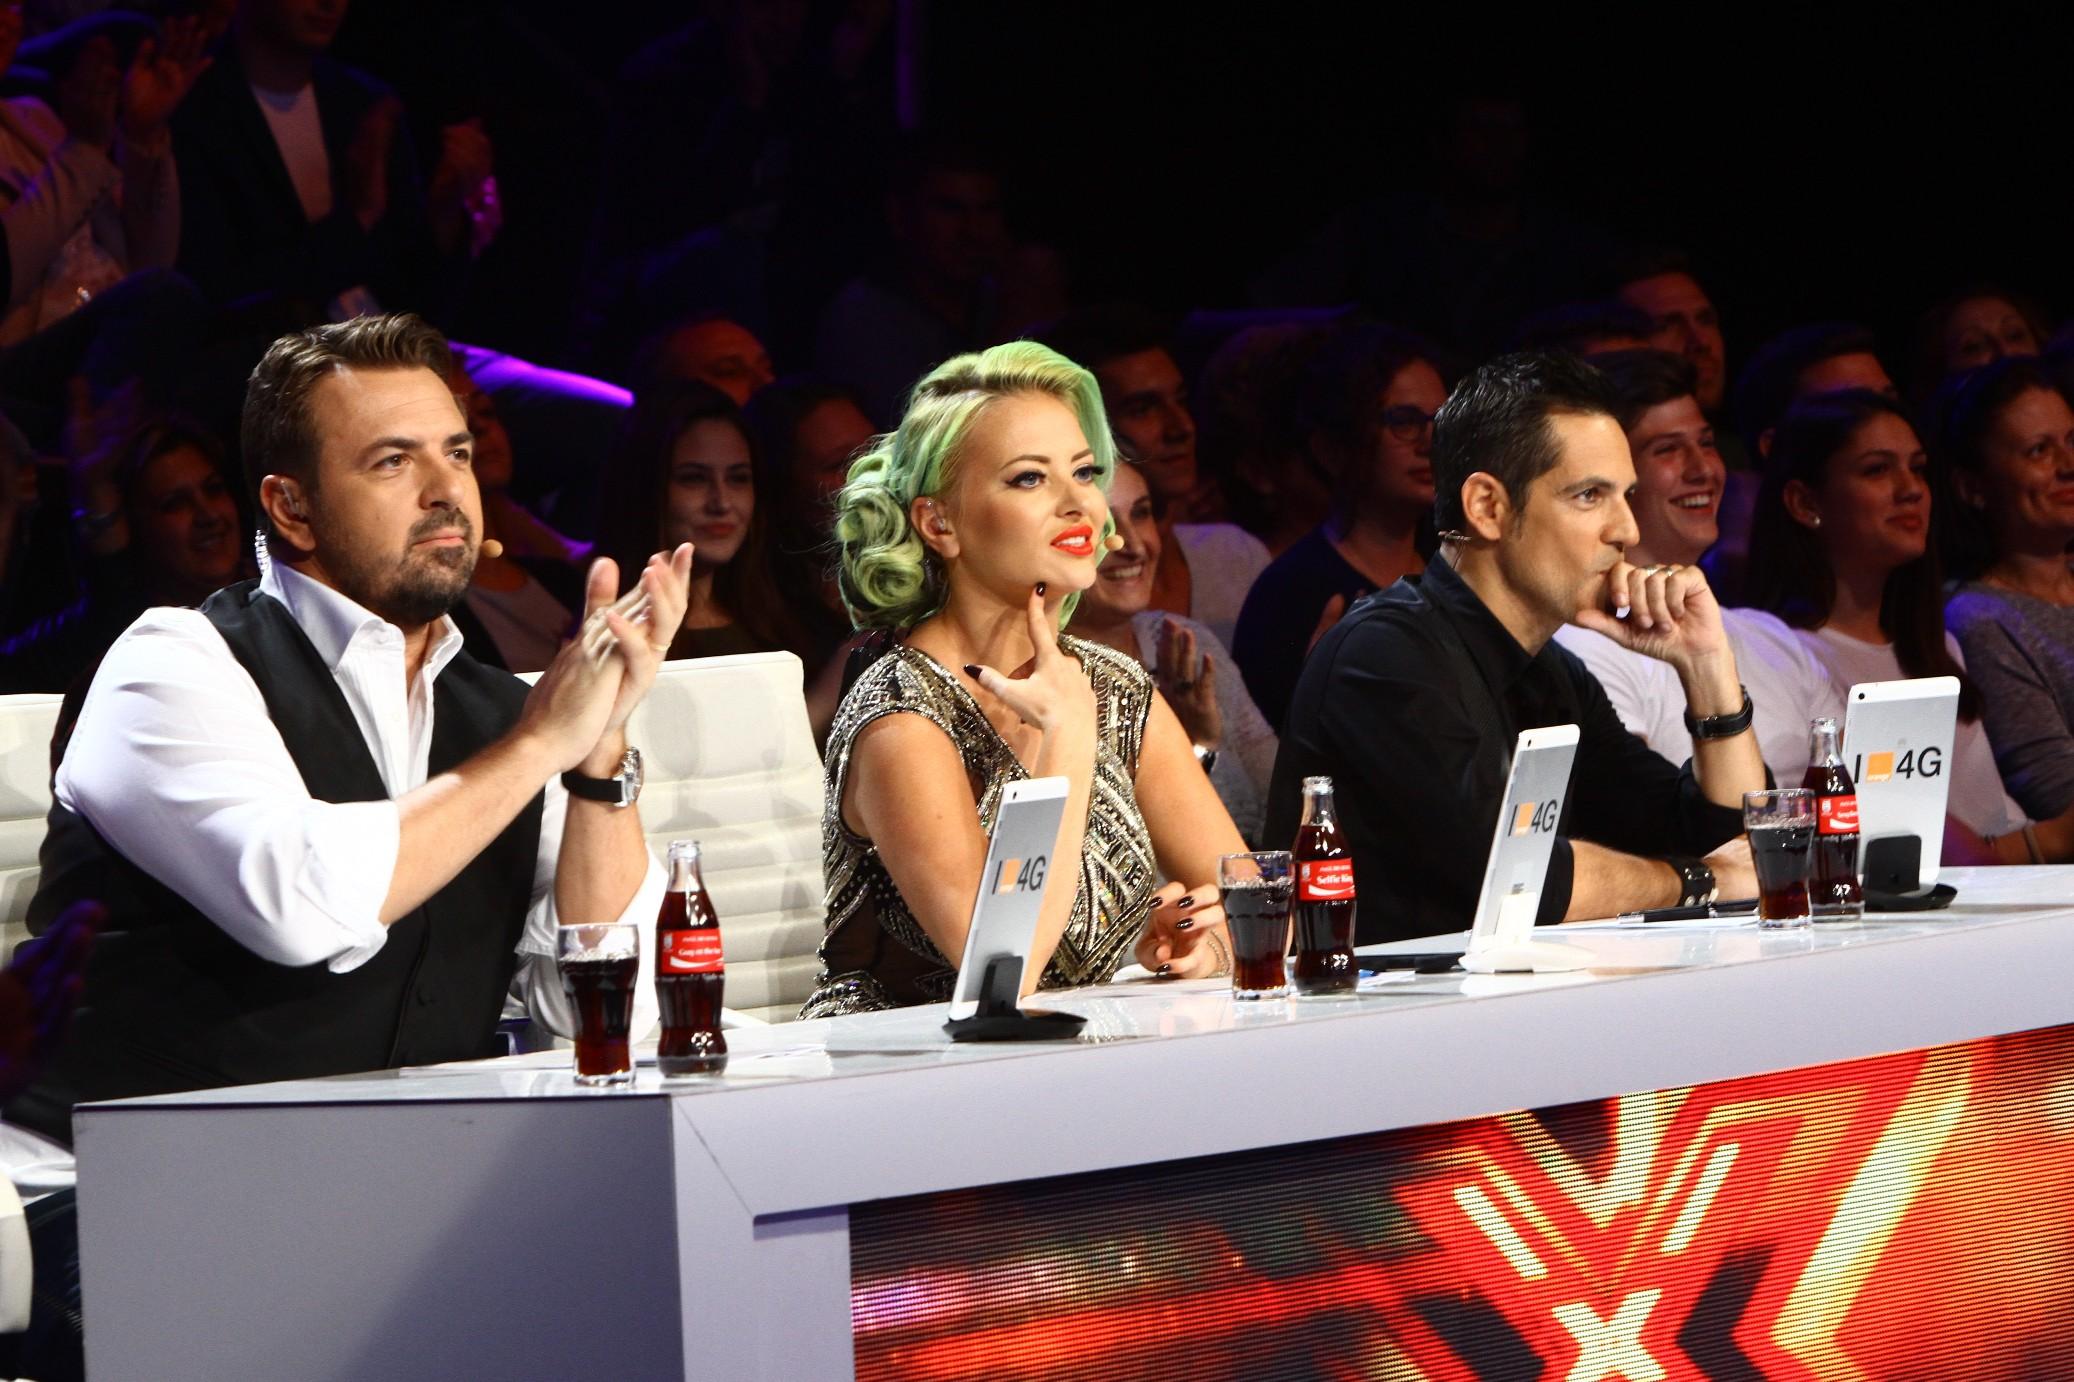 Vineri, 27 noiembrie, de la 20.30 pe Antena 1,  Ștefan Bănică deschide seria edițiilor de Bootcamp la X Factor